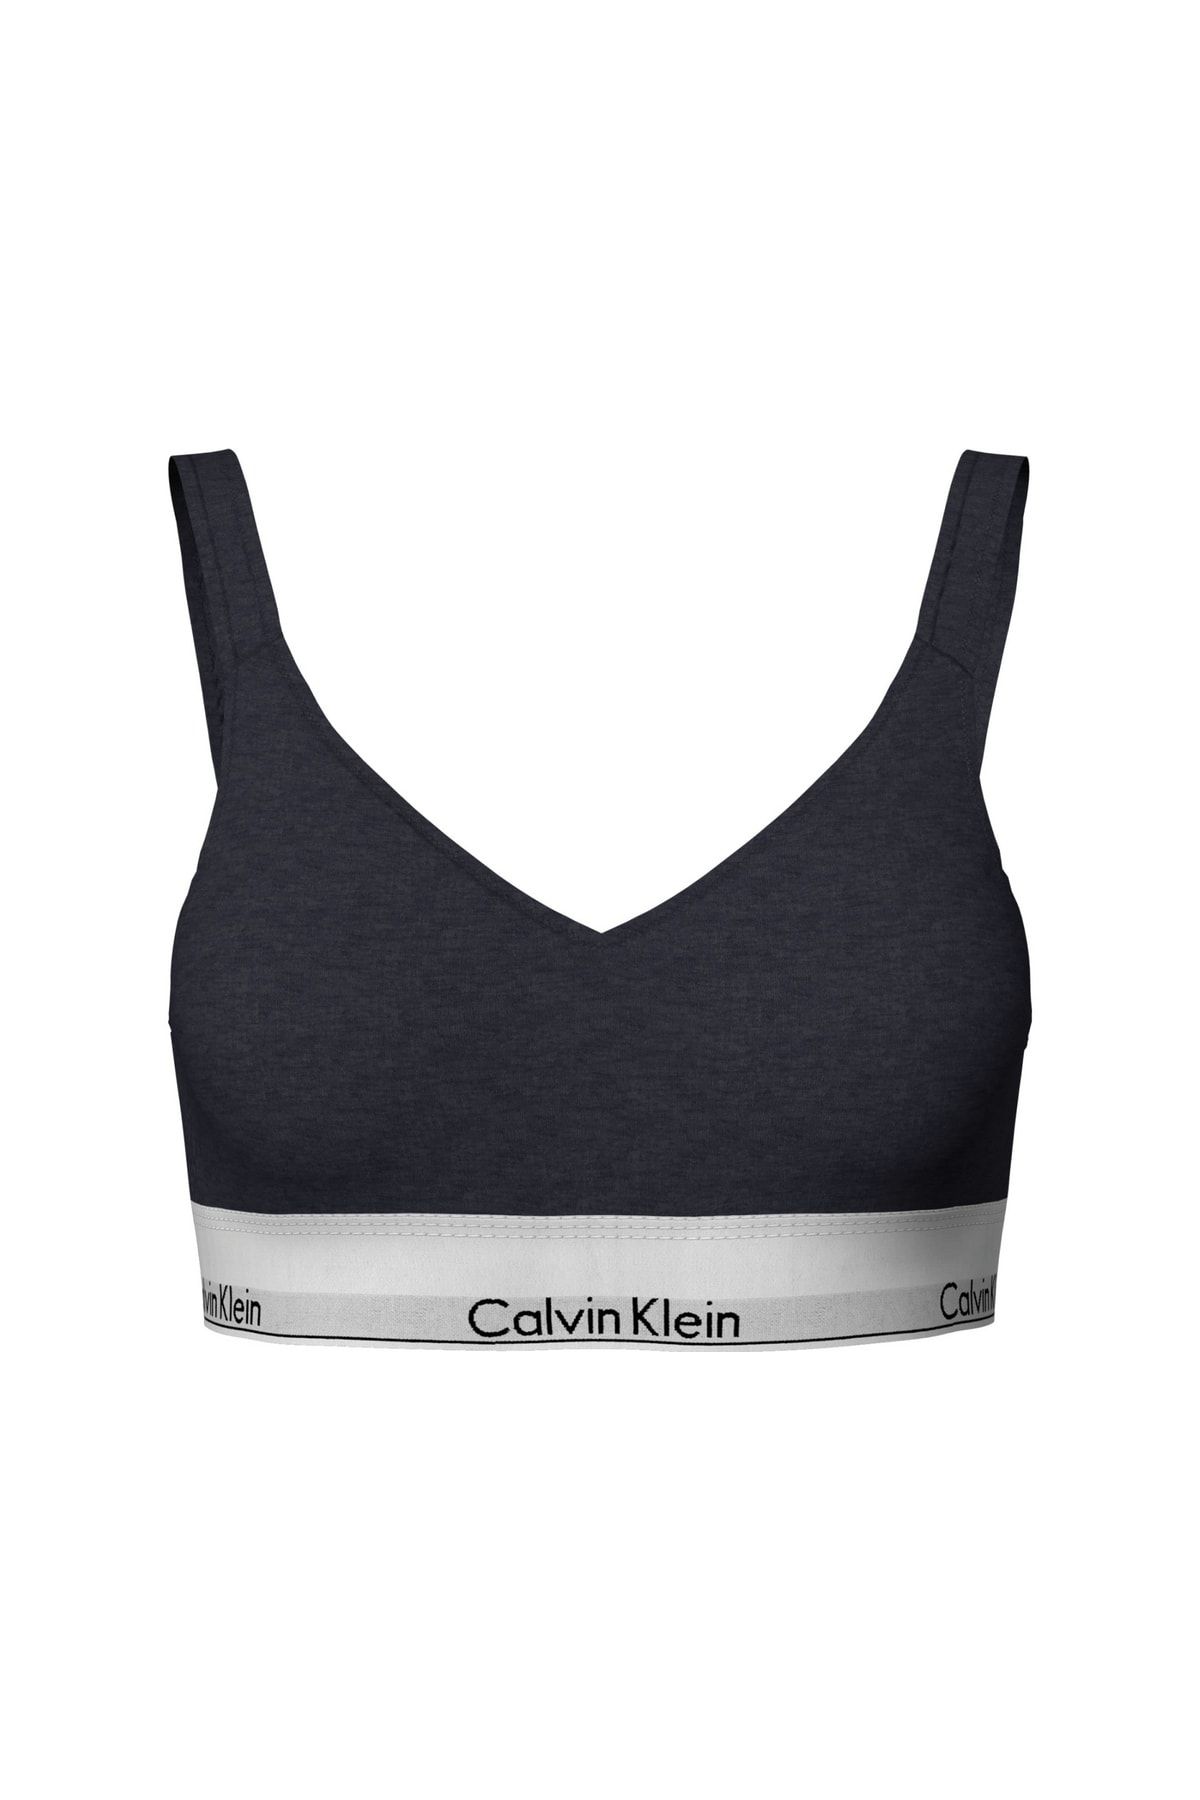 Limited edition grey Calvin Klein sports bra